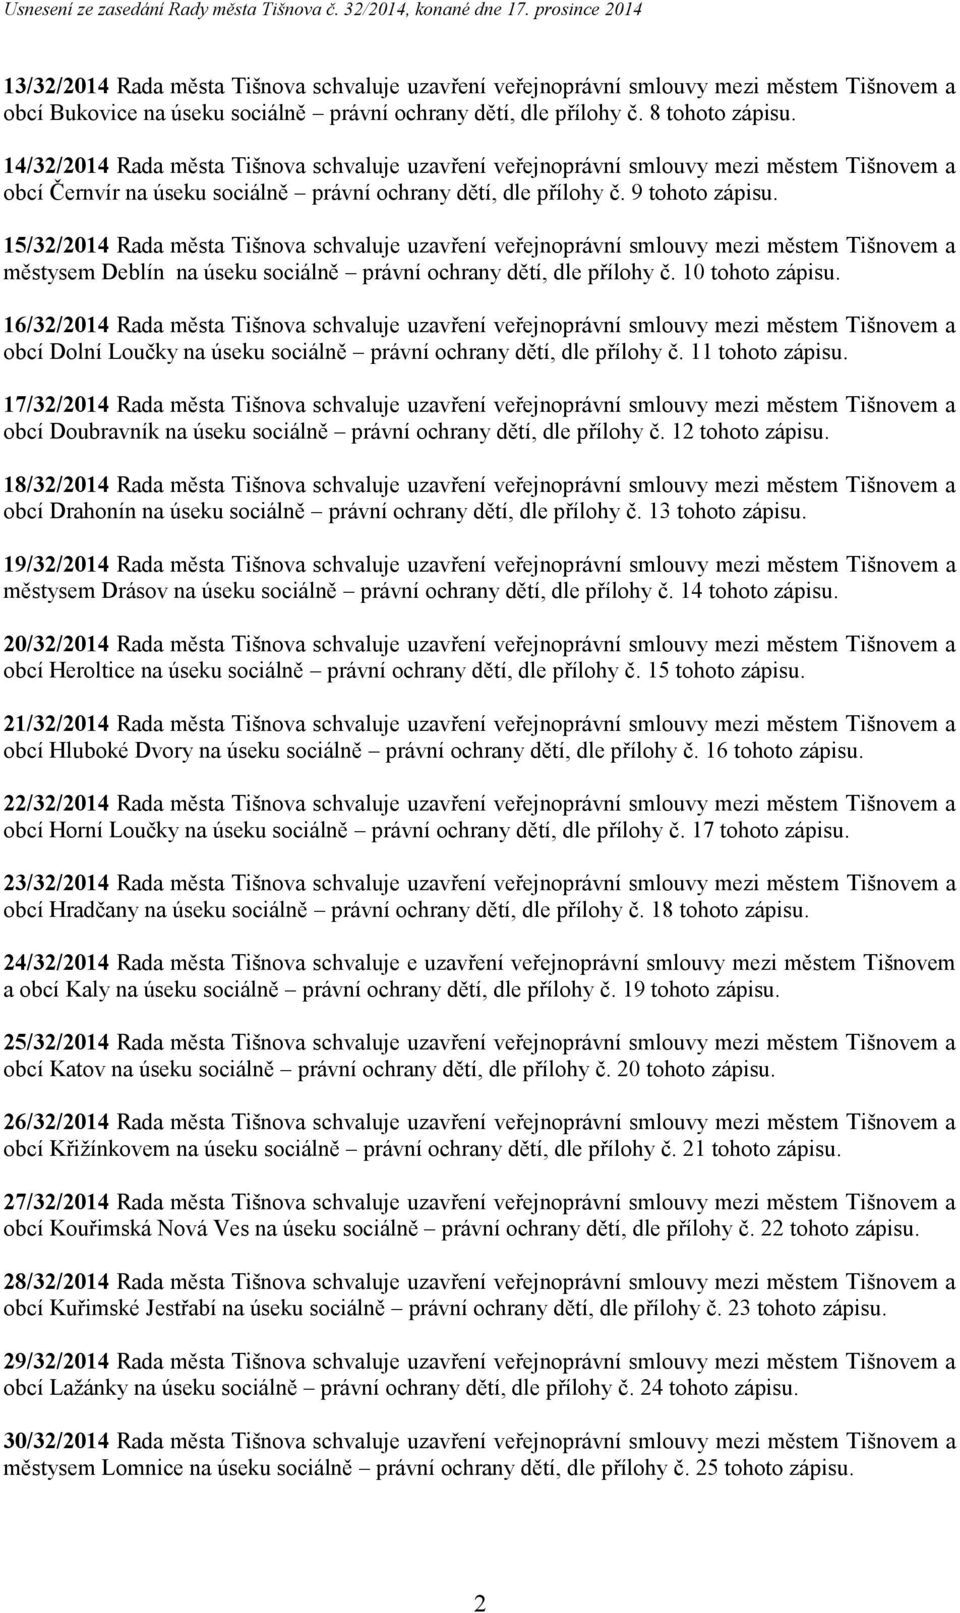 15/32/2014 Rada města Tišnova schvaluje uzavření veřejnoprávní smlouvy mezi městem Tišnovem a městysem Deblín na úseku sociálně právní ochrany dětí, dle přílohy č. 10 tohoto zápisu.